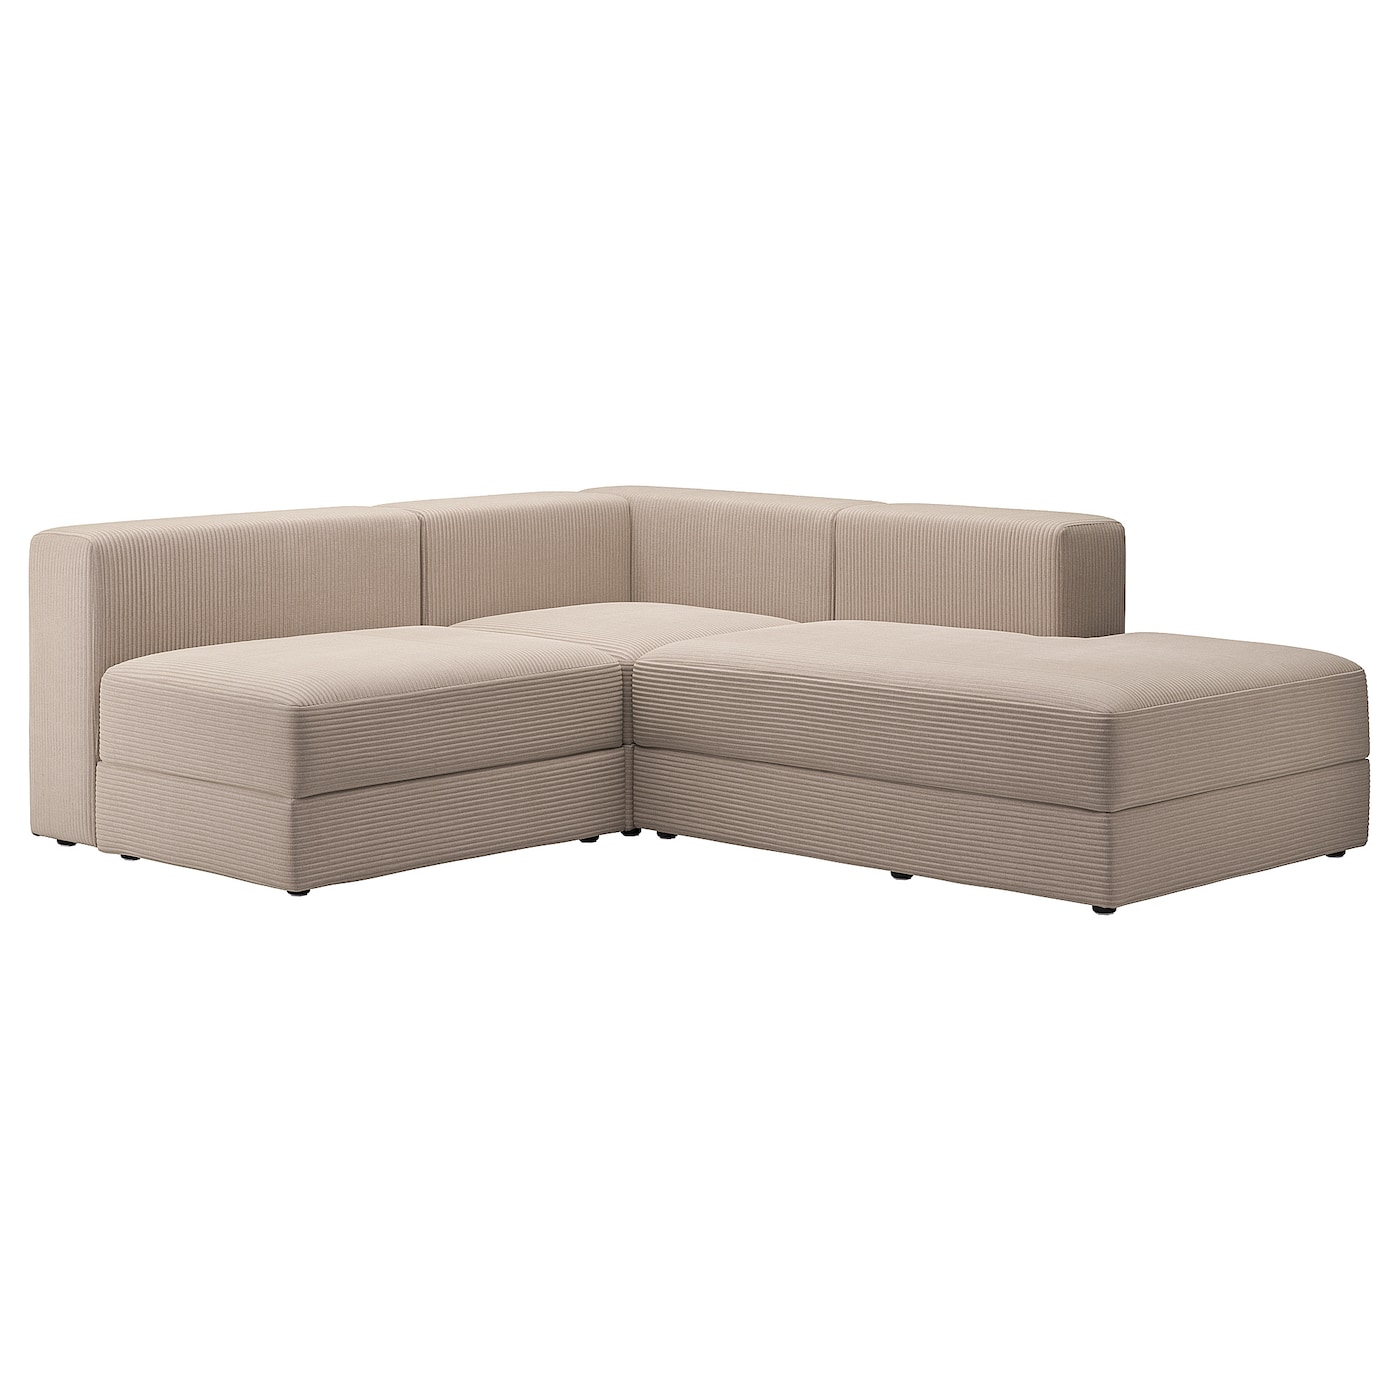 ДЖЭТТЕБО 2,5-местный модульный угловой диван-диван, правый/Самсала серый бежевый JÄTTEBO IKEA диван угловой смарт белфаст 5 модульный правый а2491529578